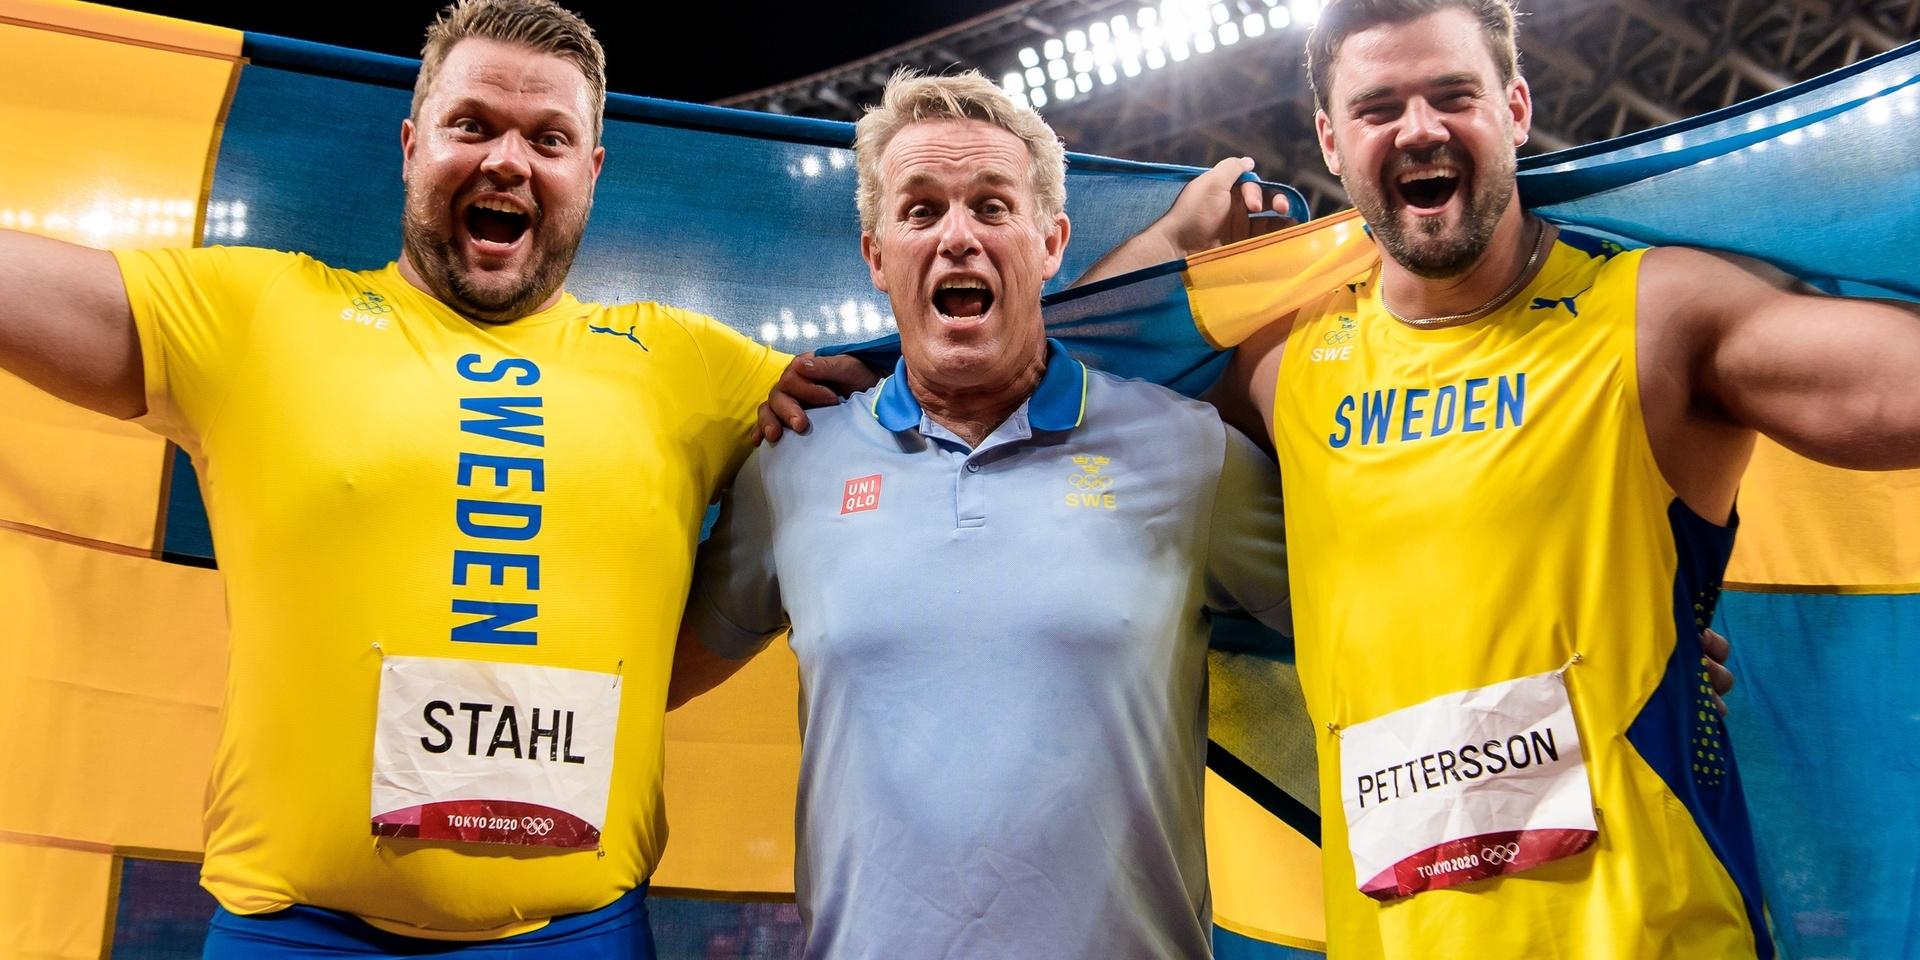 Tränare Vesteinn Hafsteinsson firar att  hans adepter Daniel Ståhl och Simon Pettersson tog både OS-guld och OS-silver i diskus.